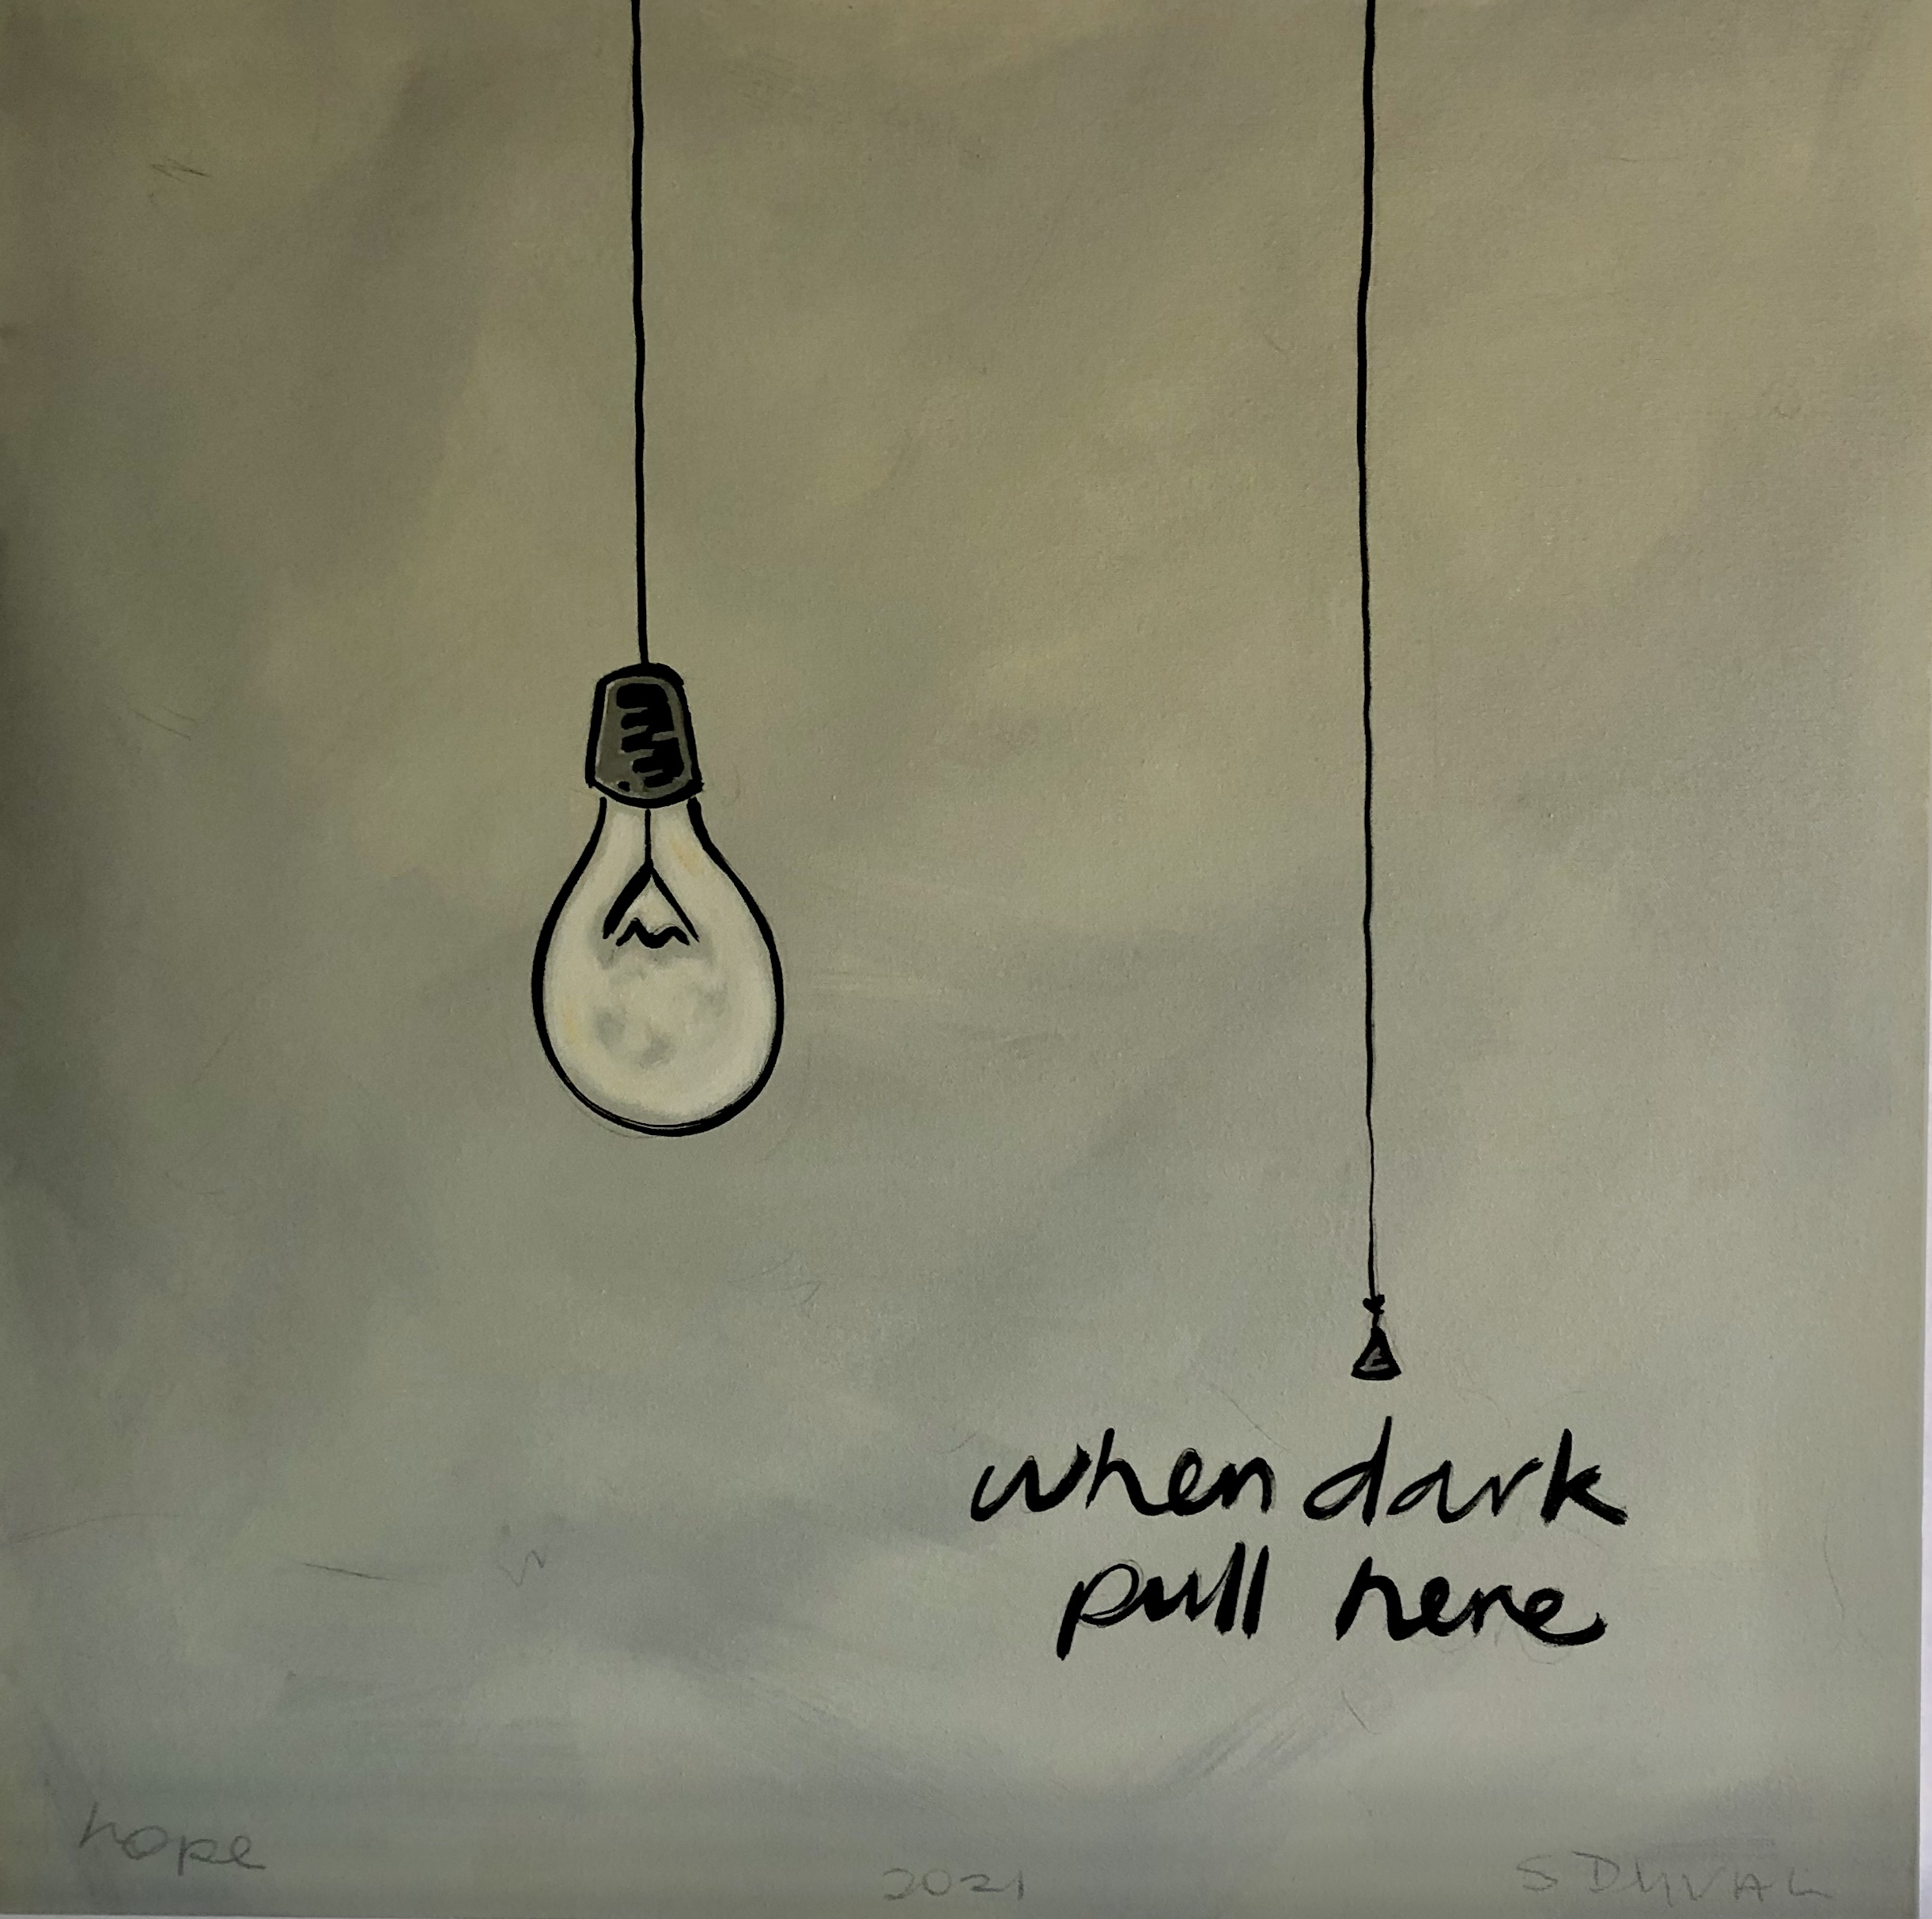 When Dark